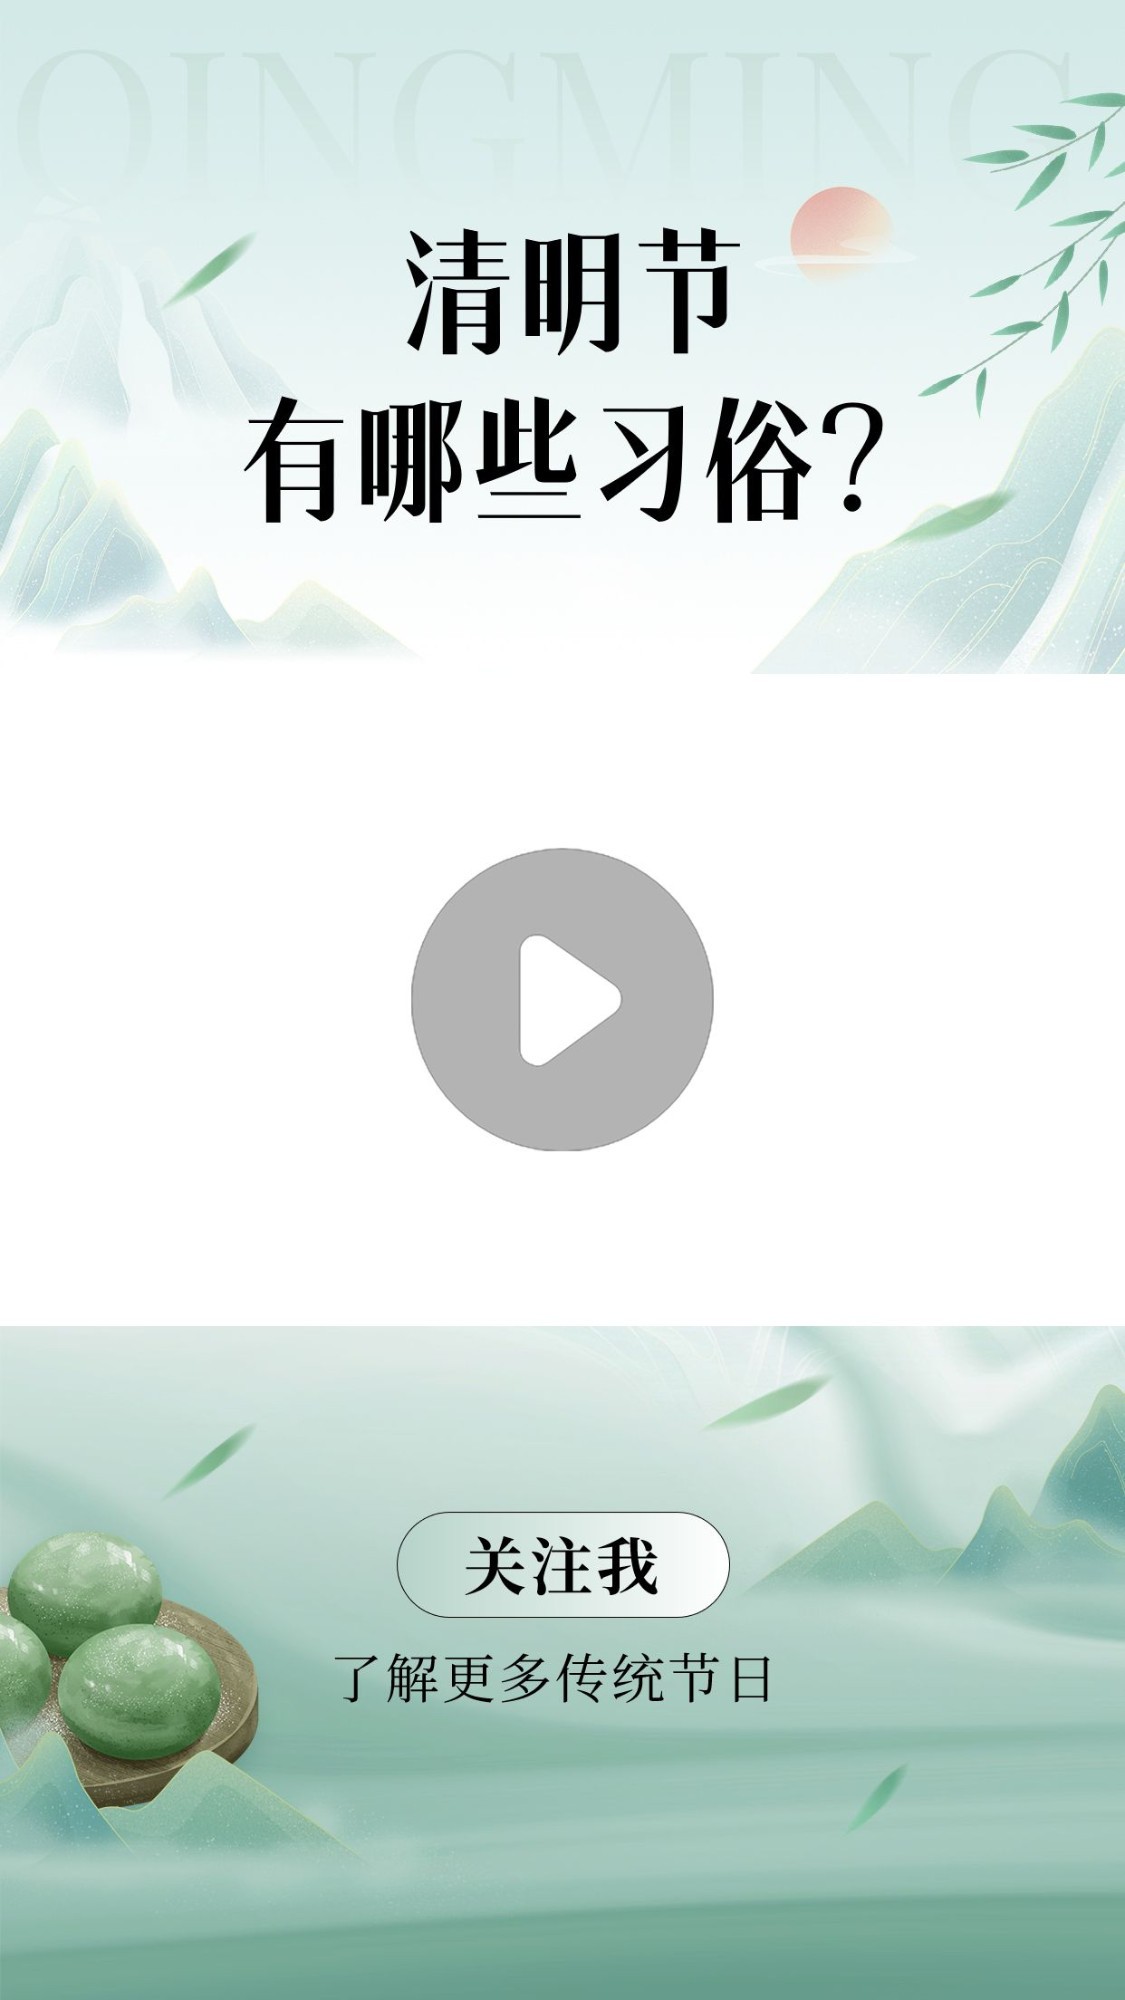 清明节习俗科普宣传视频边框